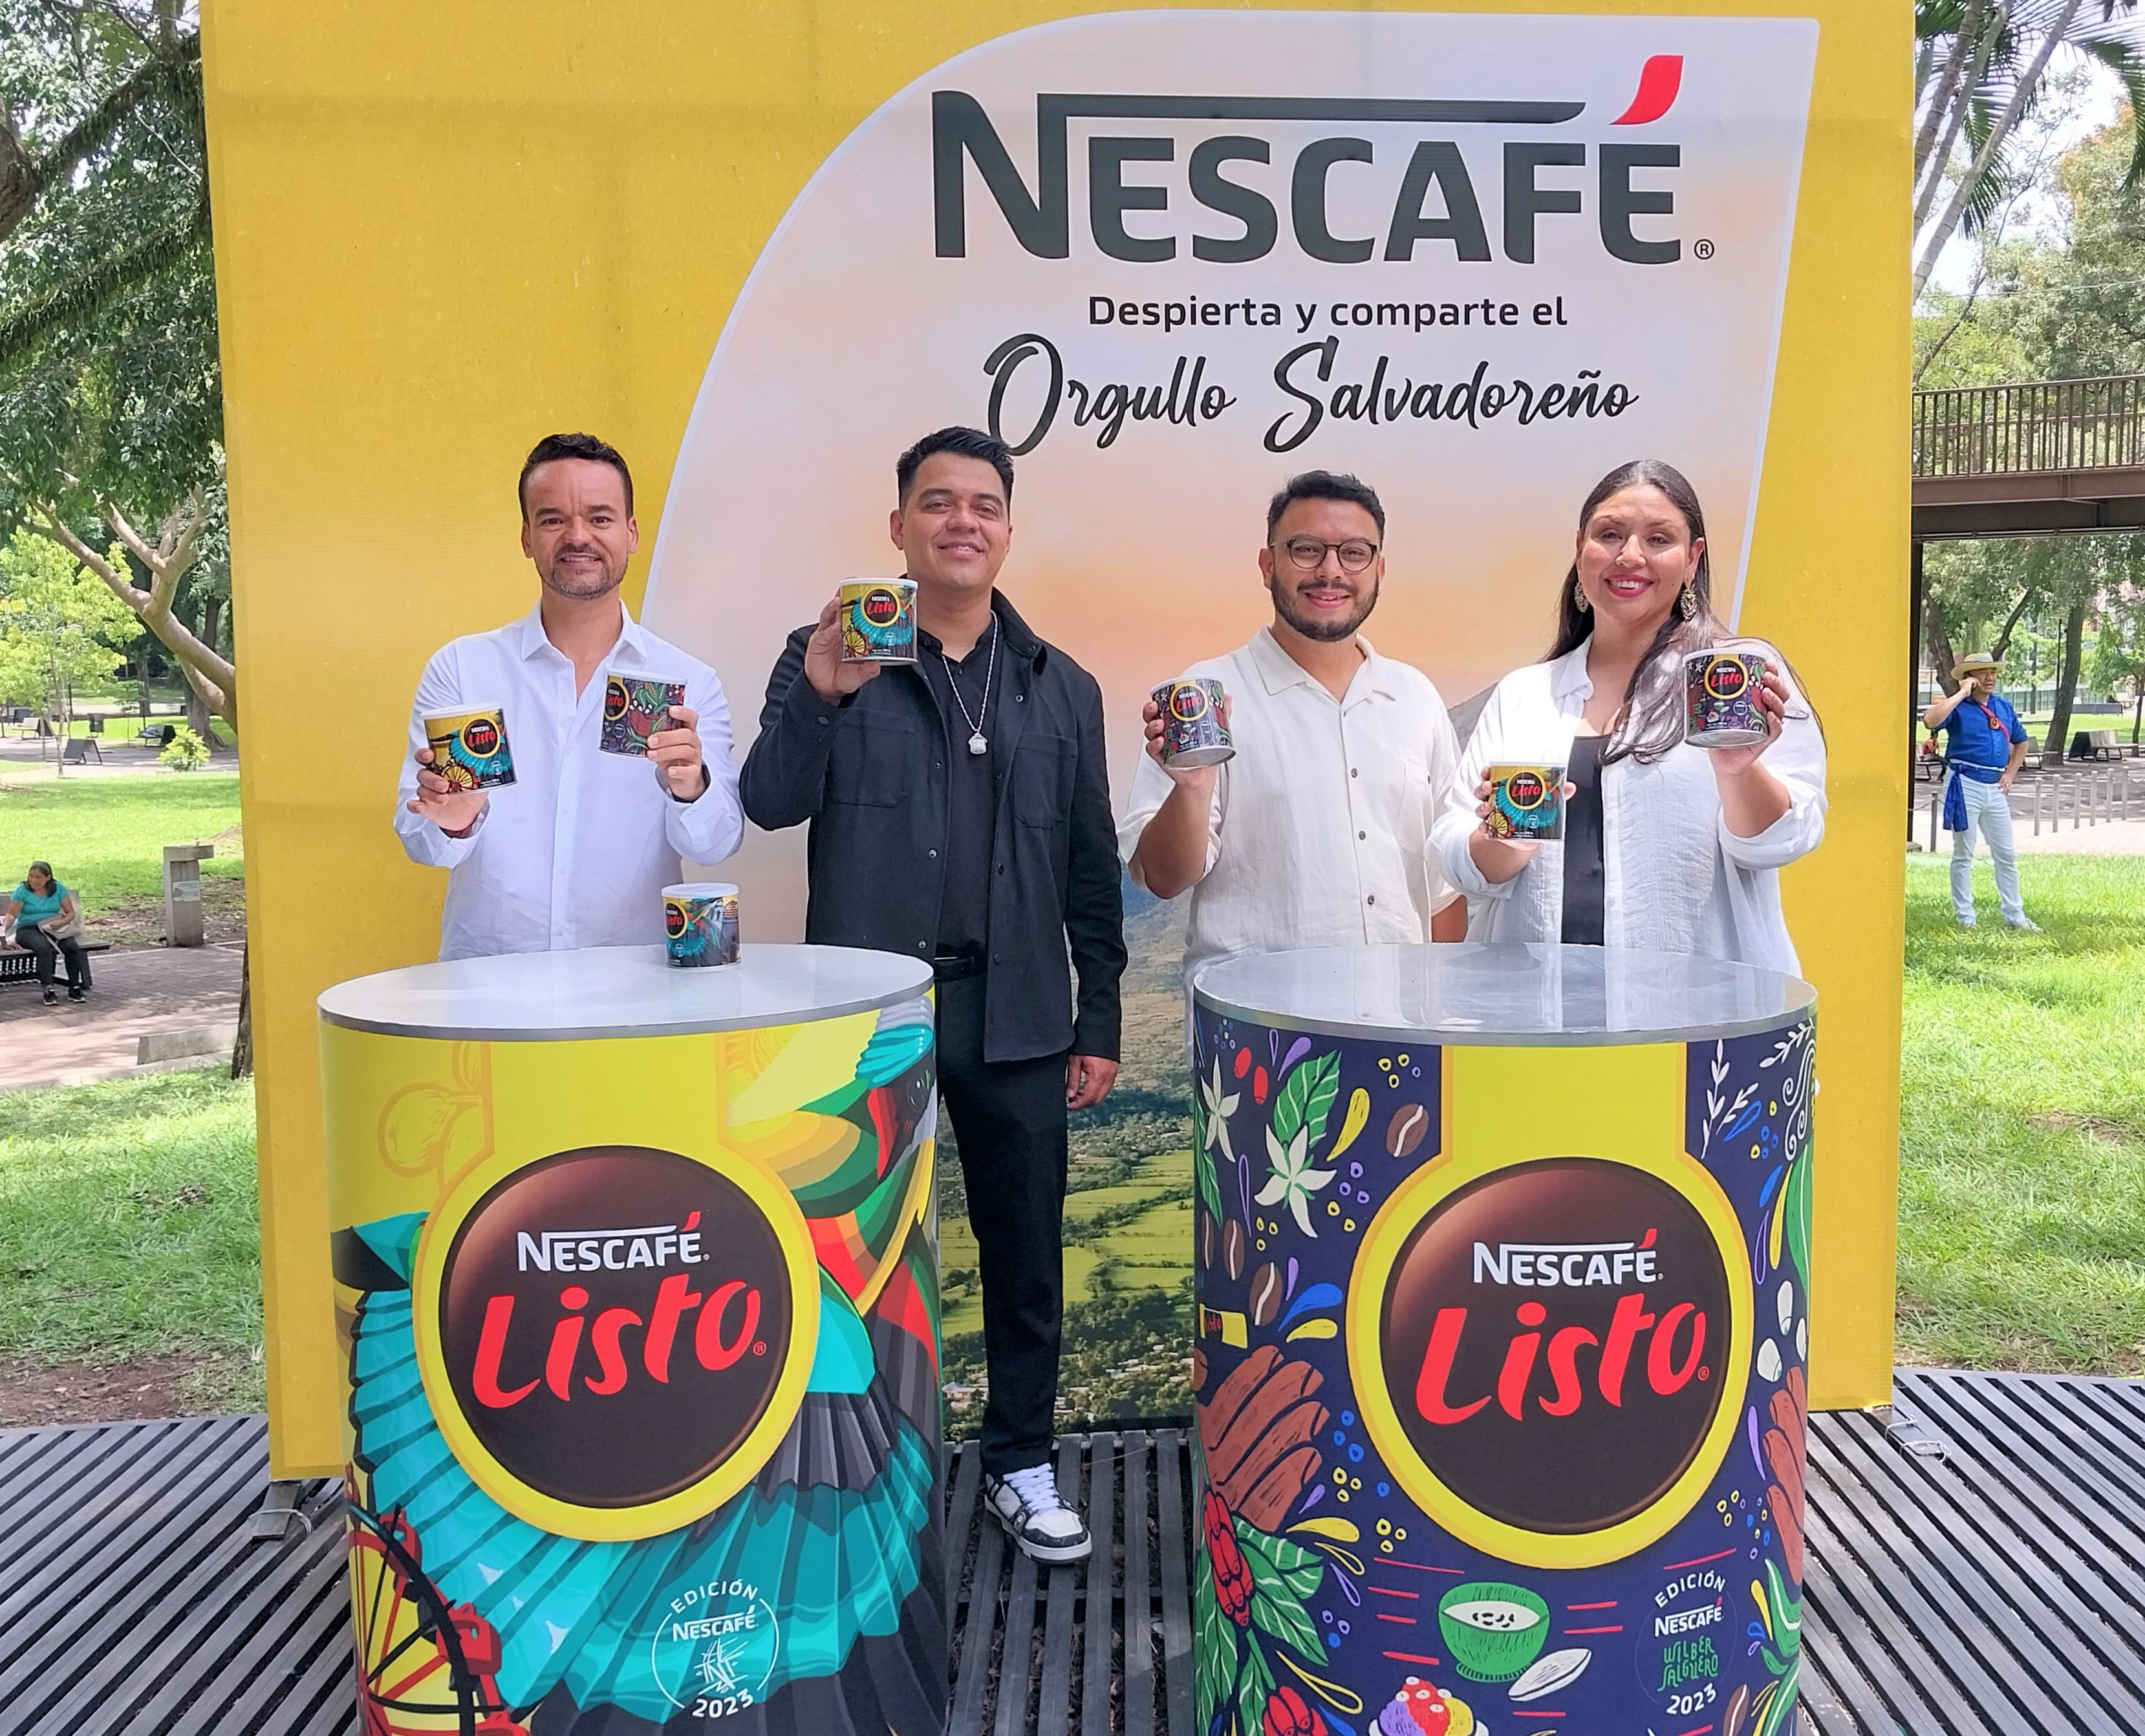 Latas Edición Limitada de Nescafé Listo Despierta y Comparte Nuestro Orgullo